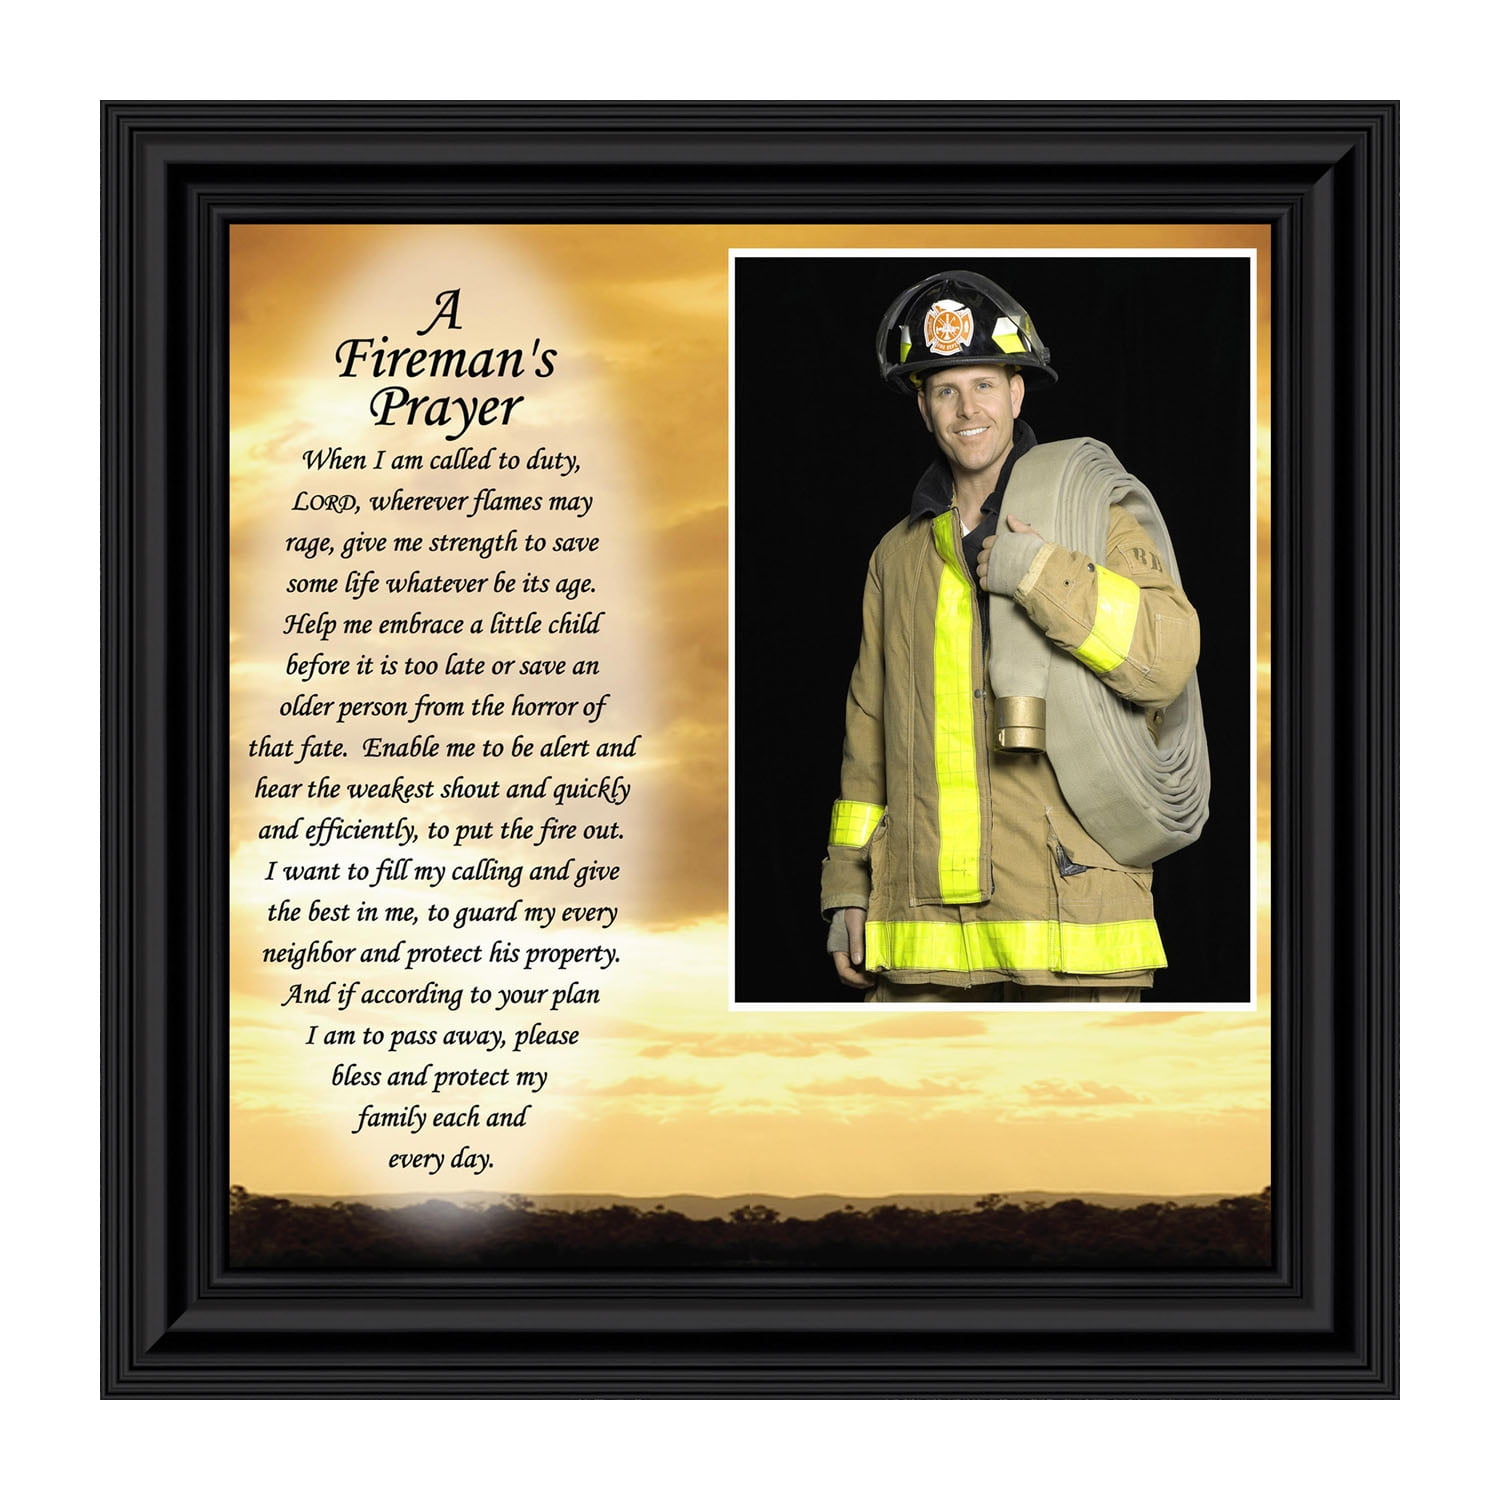 Firefighter prayer pen wraps